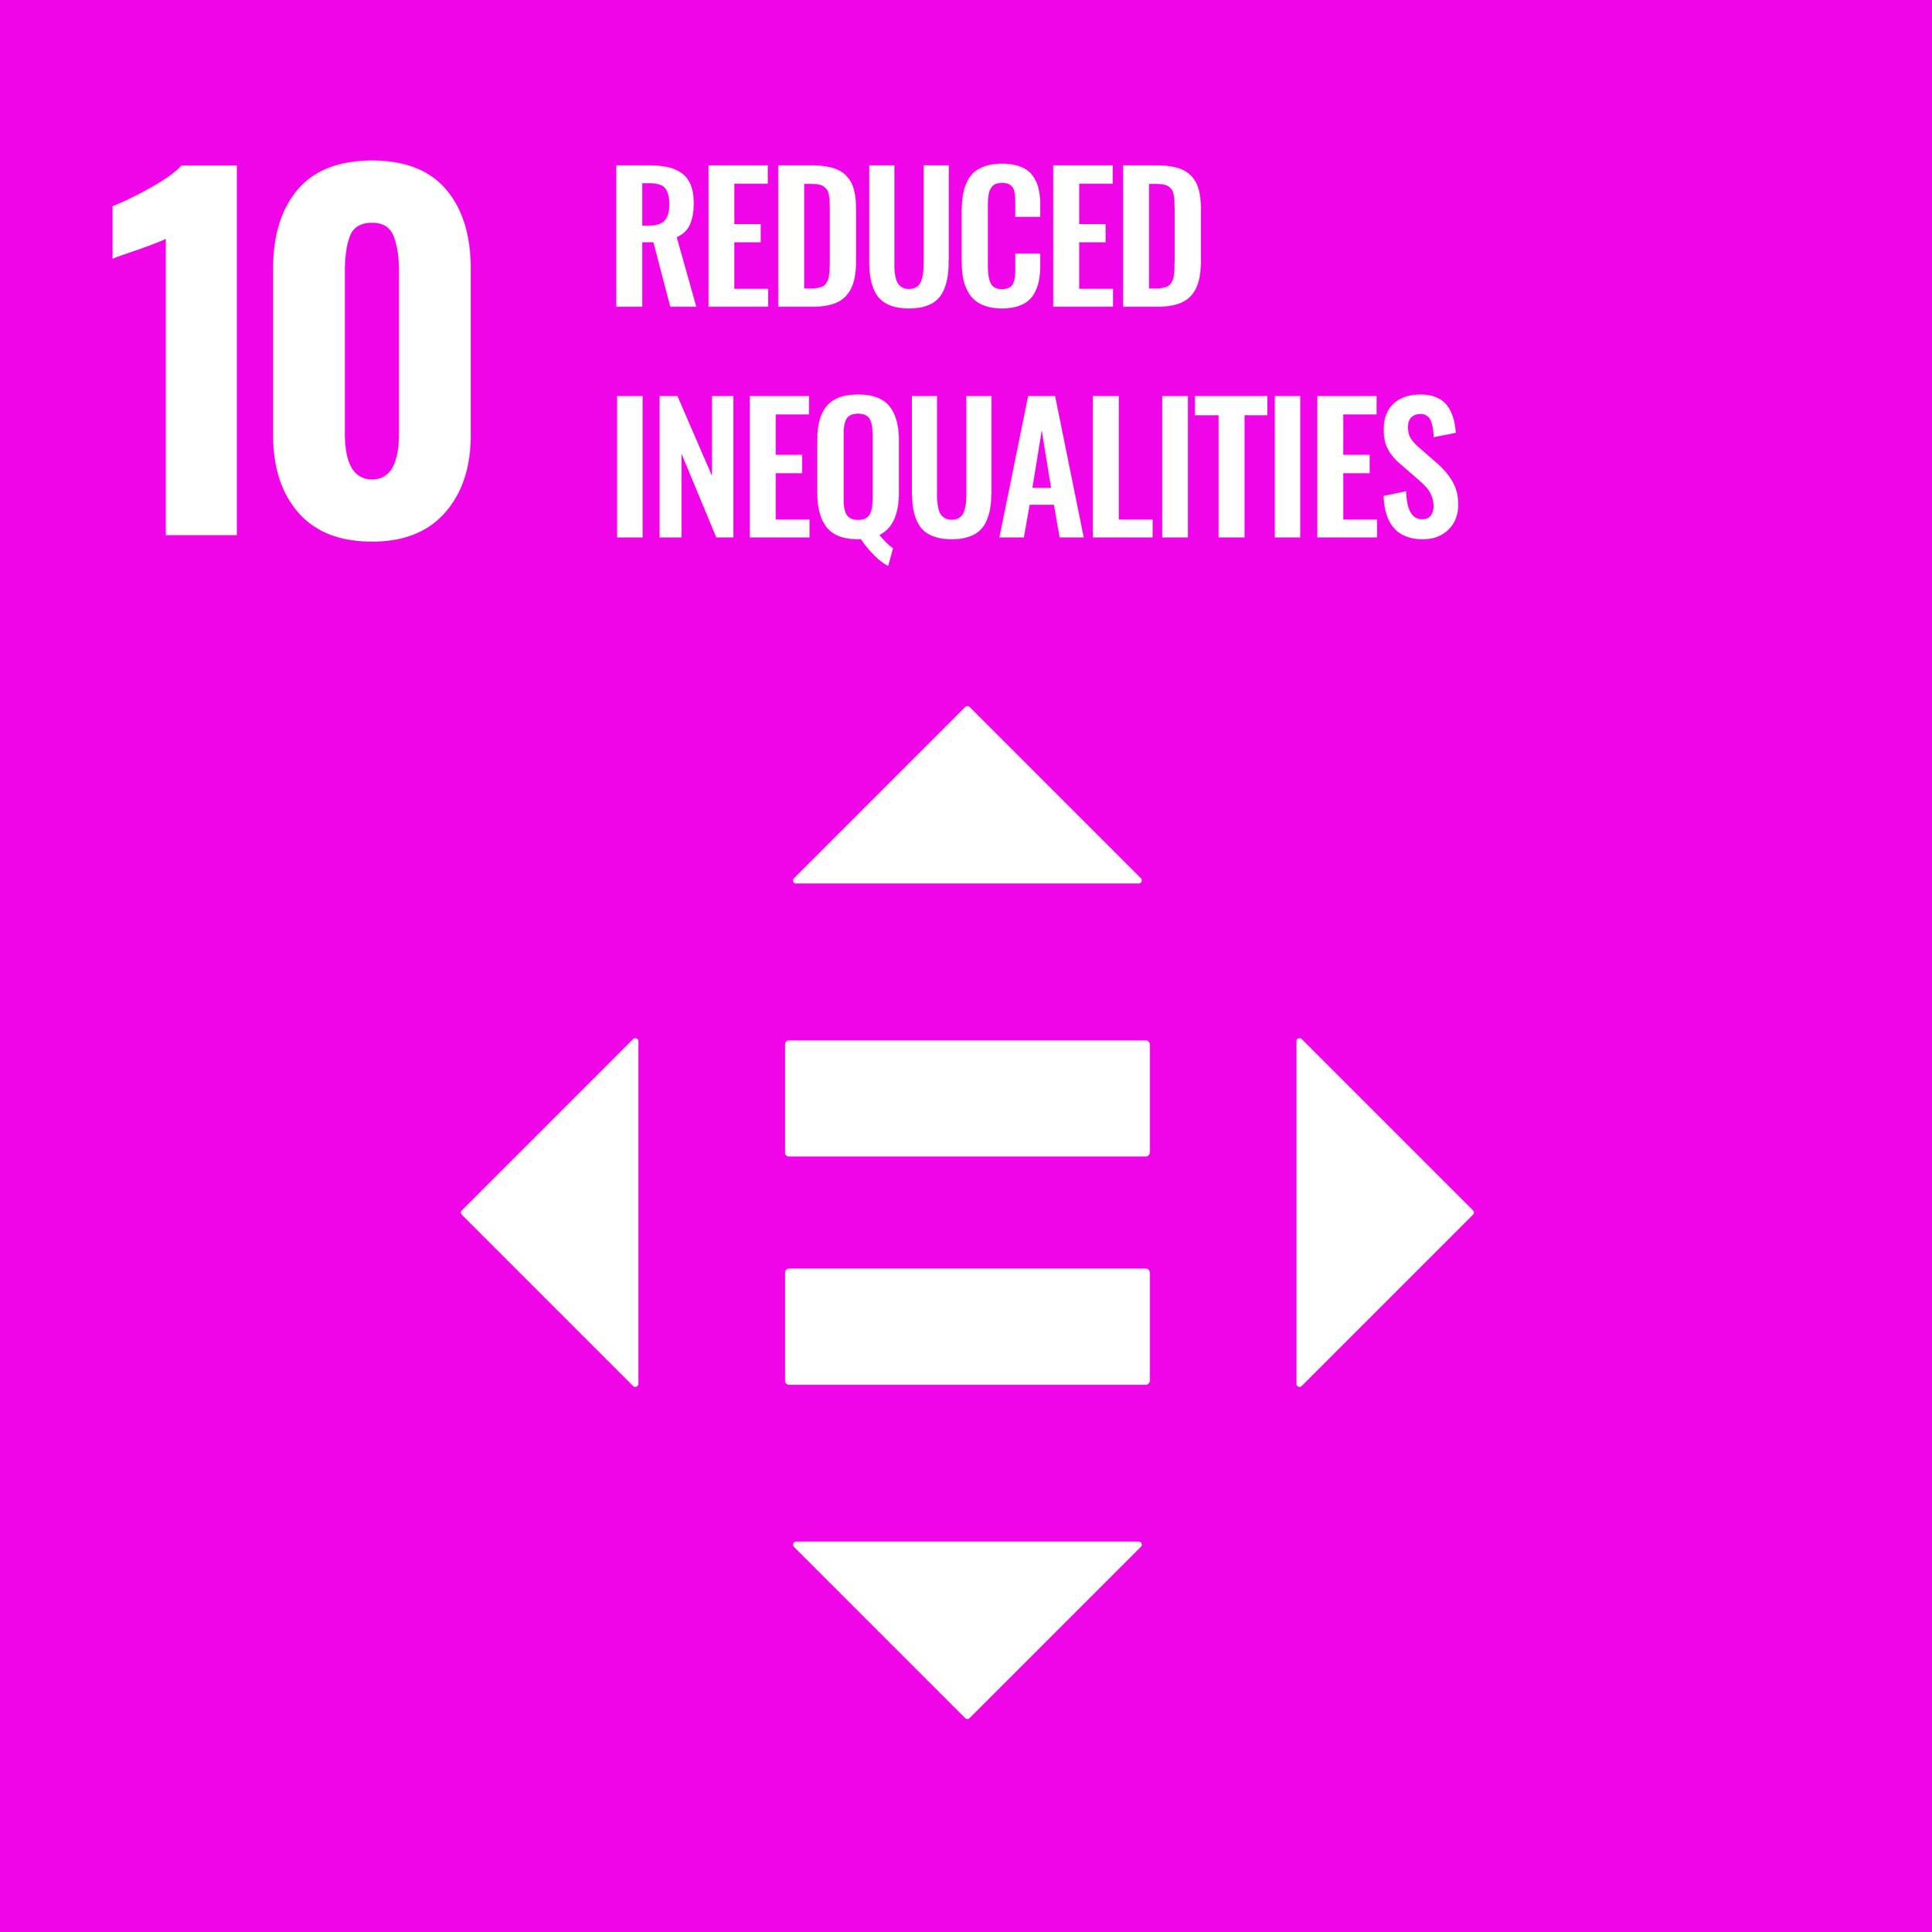 SDG #10